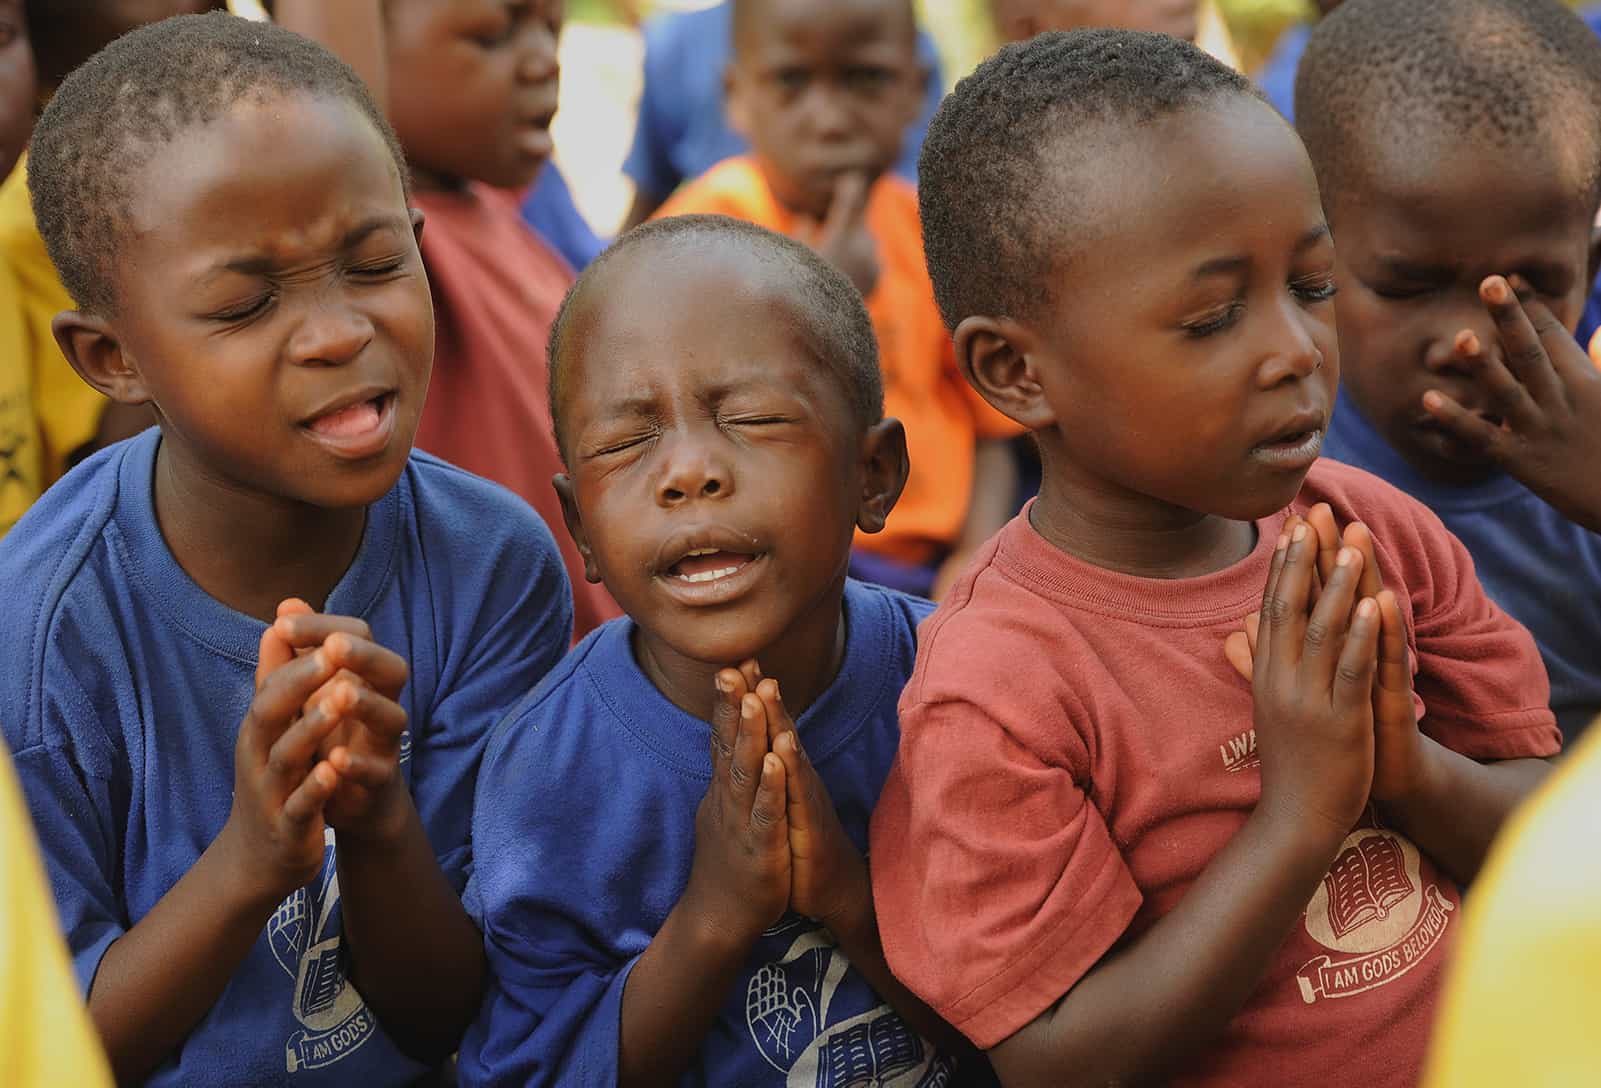 Three boys from Uganda fervently praying